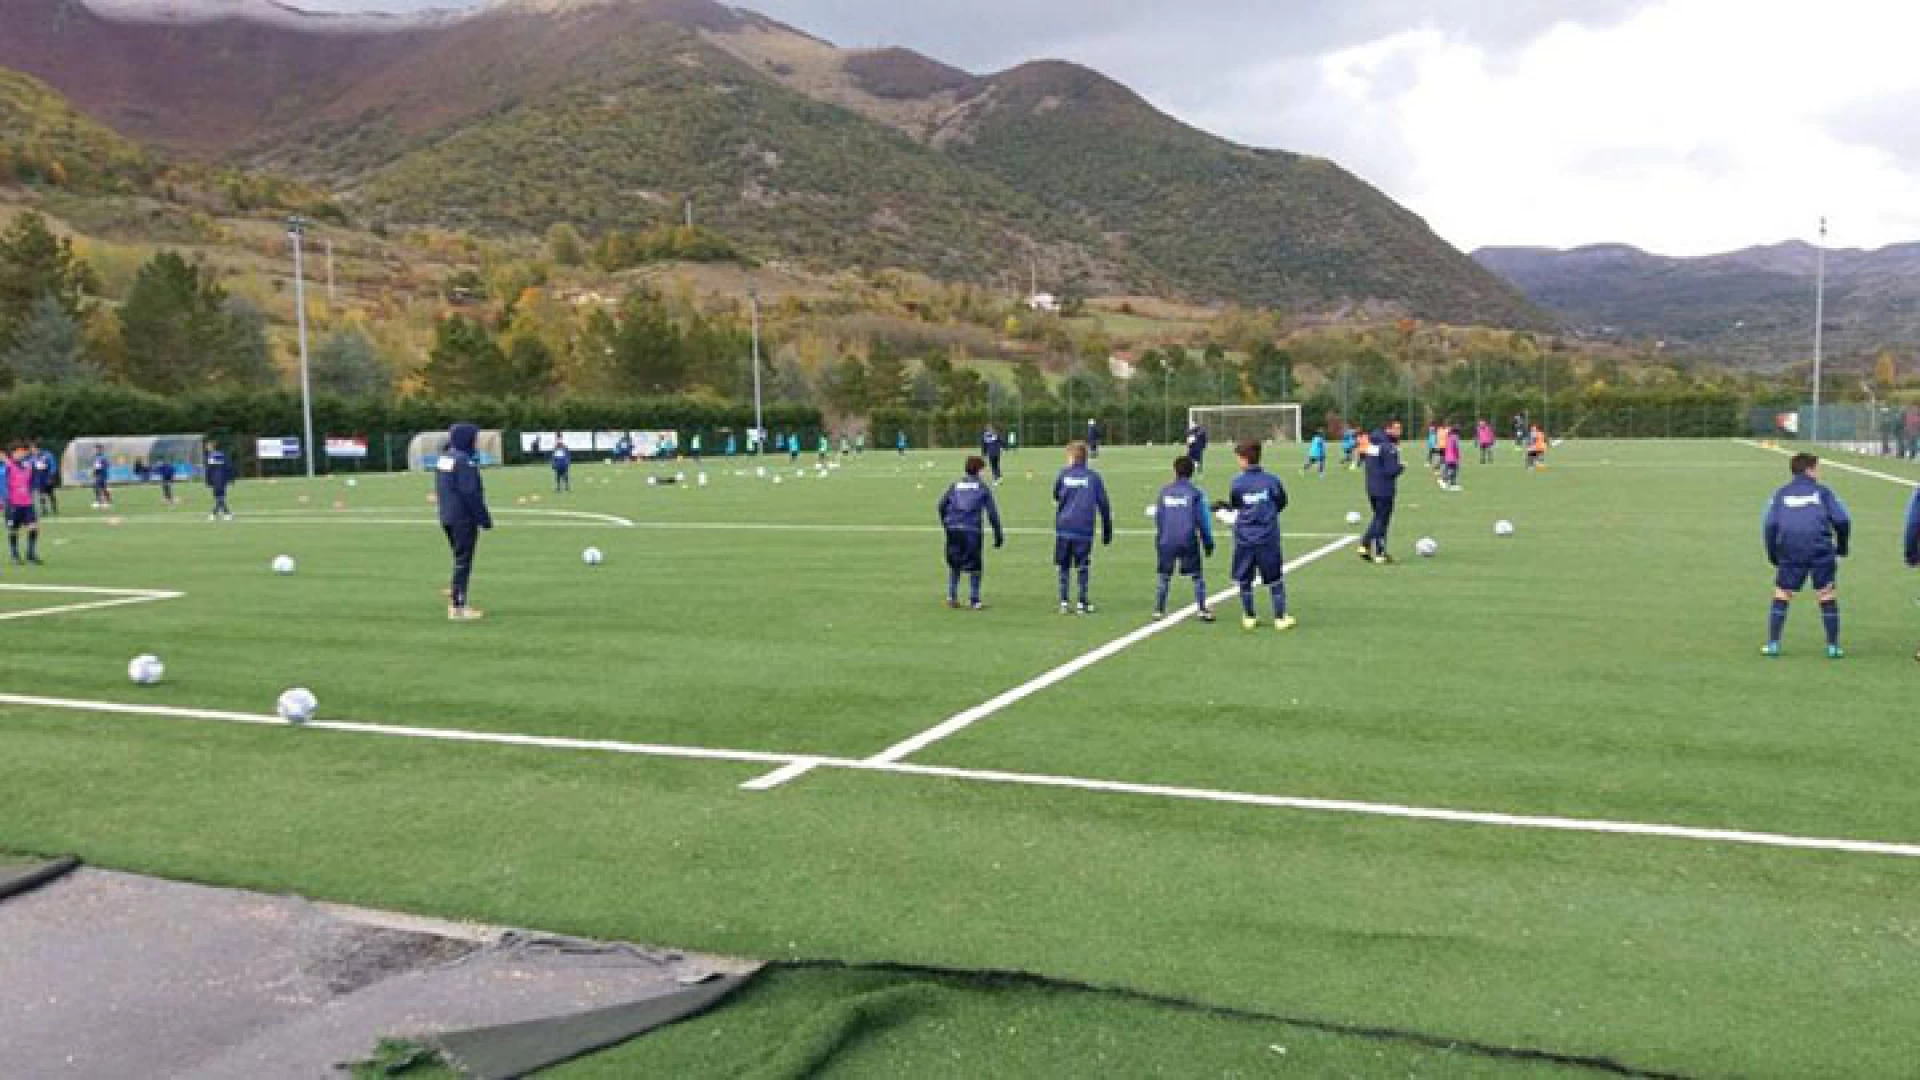 Calcio giovanile e formazione: al centro tecnico federale di Castel Di Sangro continua la formazione dei tecnici e dei calciatori dell’Asd Boys Roccaravindola.